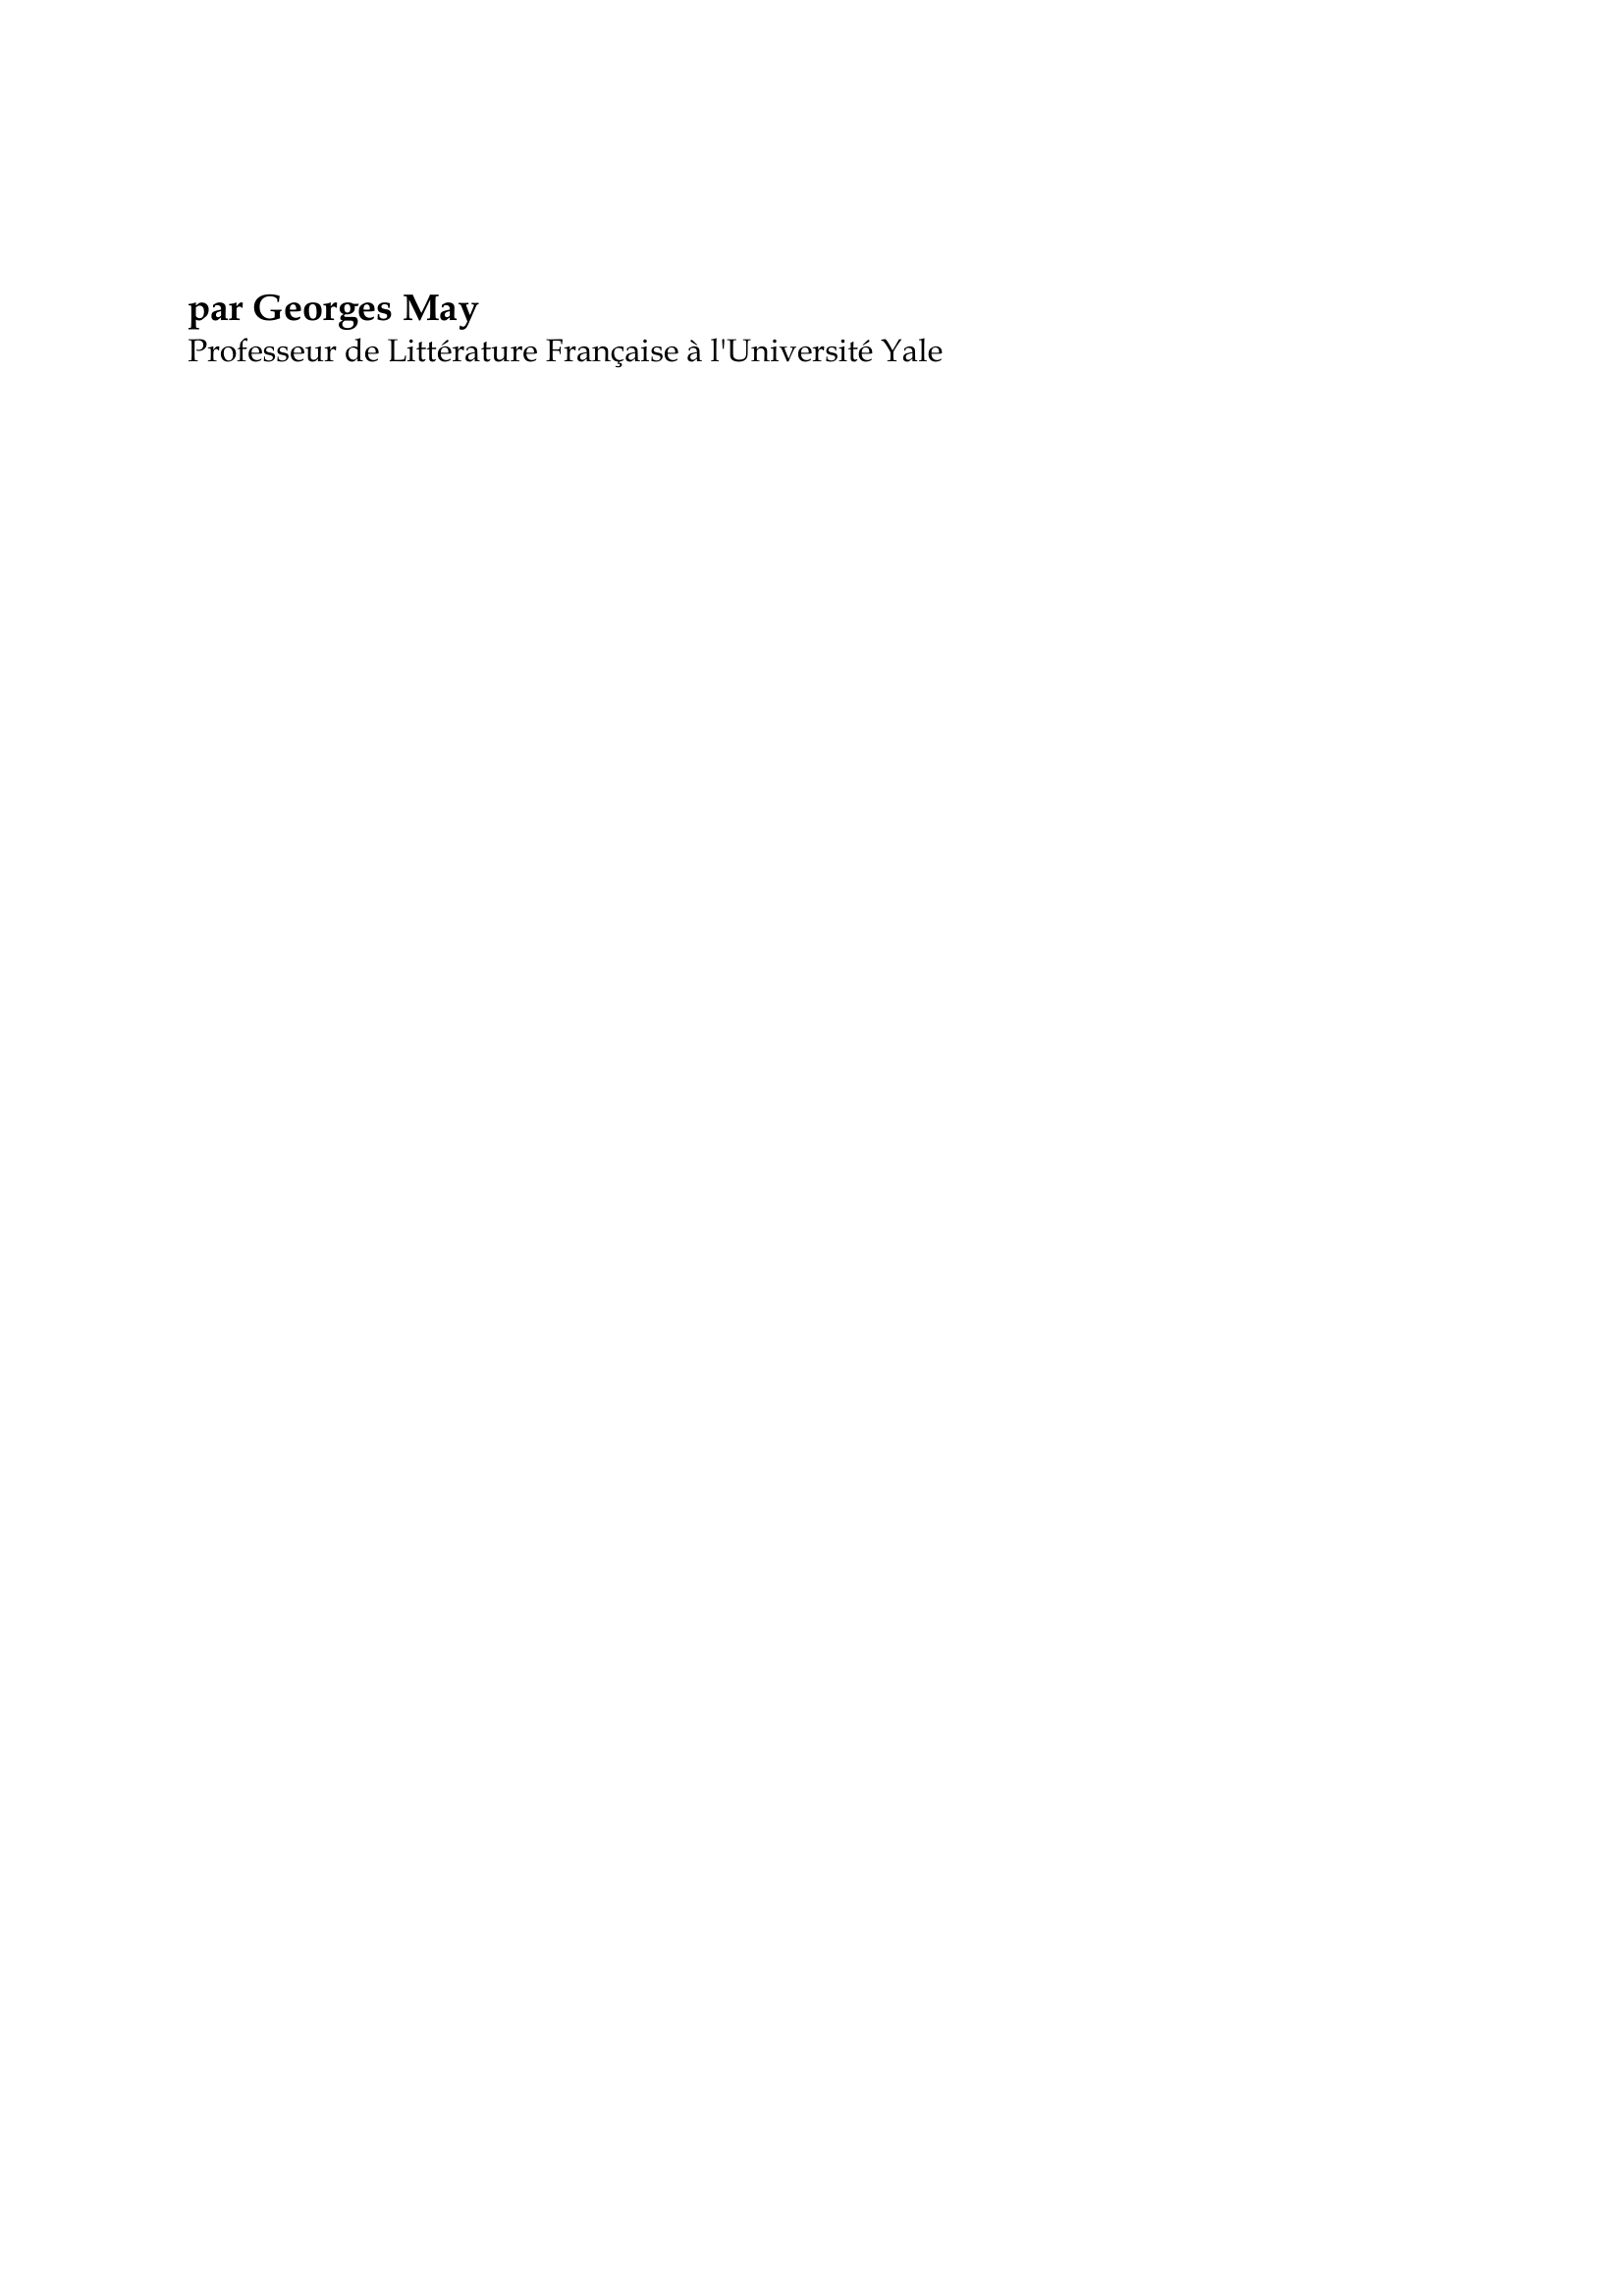 Prévisualisation du document Denis Diderot

par Georges May
Professeur de Littérature Française à l'Université Yale

La